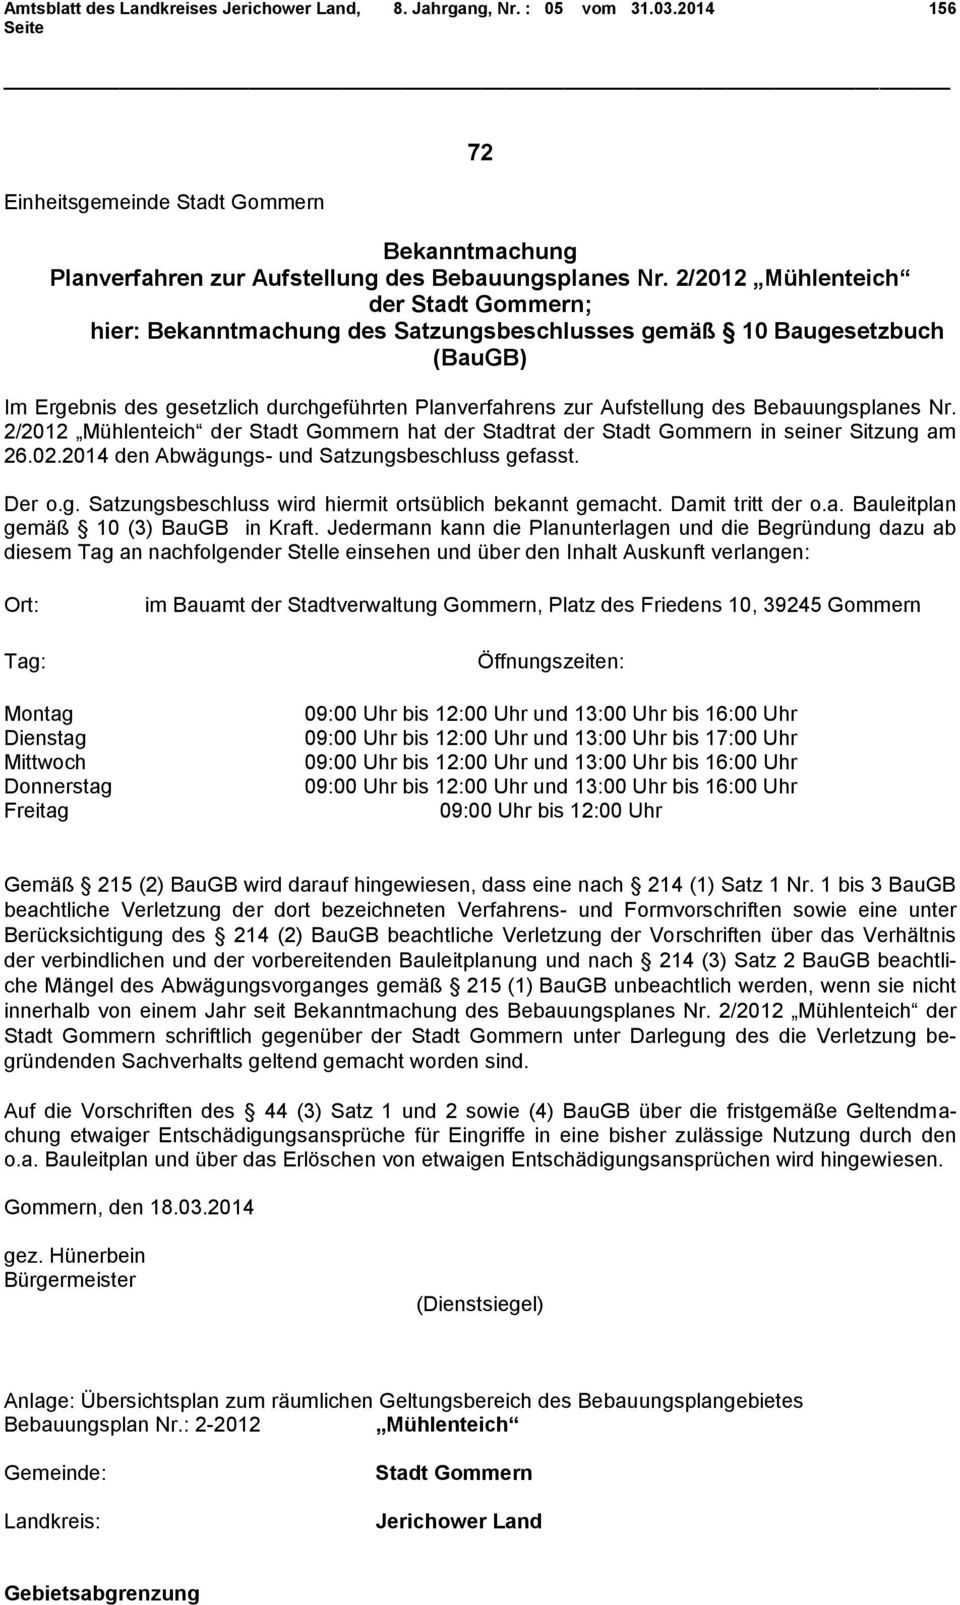 Bebauungsplanes Nr. 2/2012 Mühlenteich der Stadt Gommern hat der Stadtrat der Stadt Gommern in seiner Sitzung am 26.02.2014 den Abwägungs- und Satzungsbeschluss gefasst. Der o.g. Satzungsbeschluss wird hiermit ortsüblich bekannt gemacht.